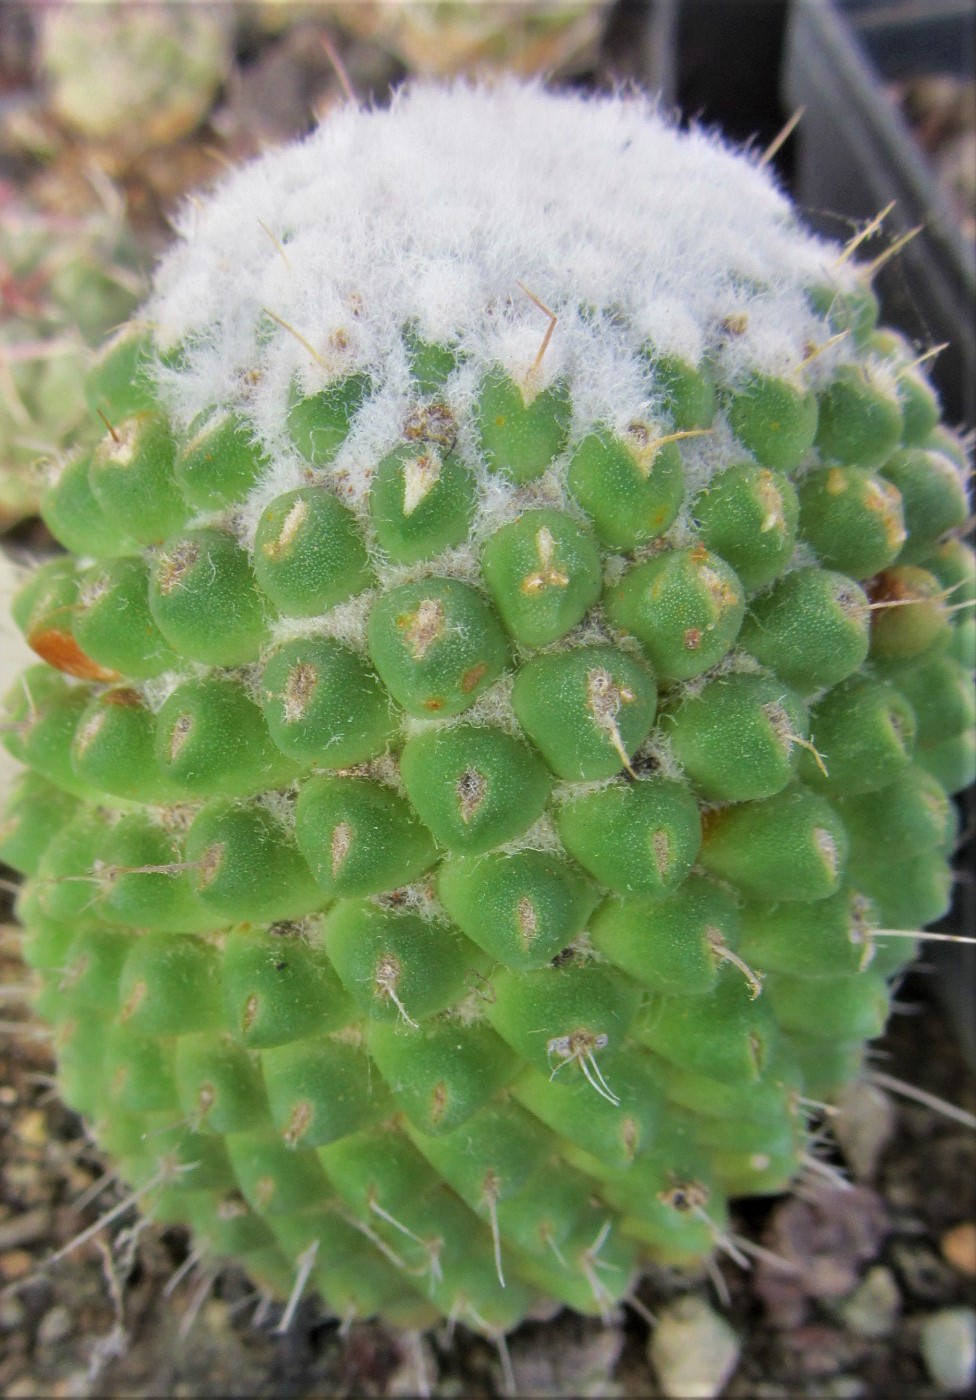 Mammillaria <br>cv uni pico